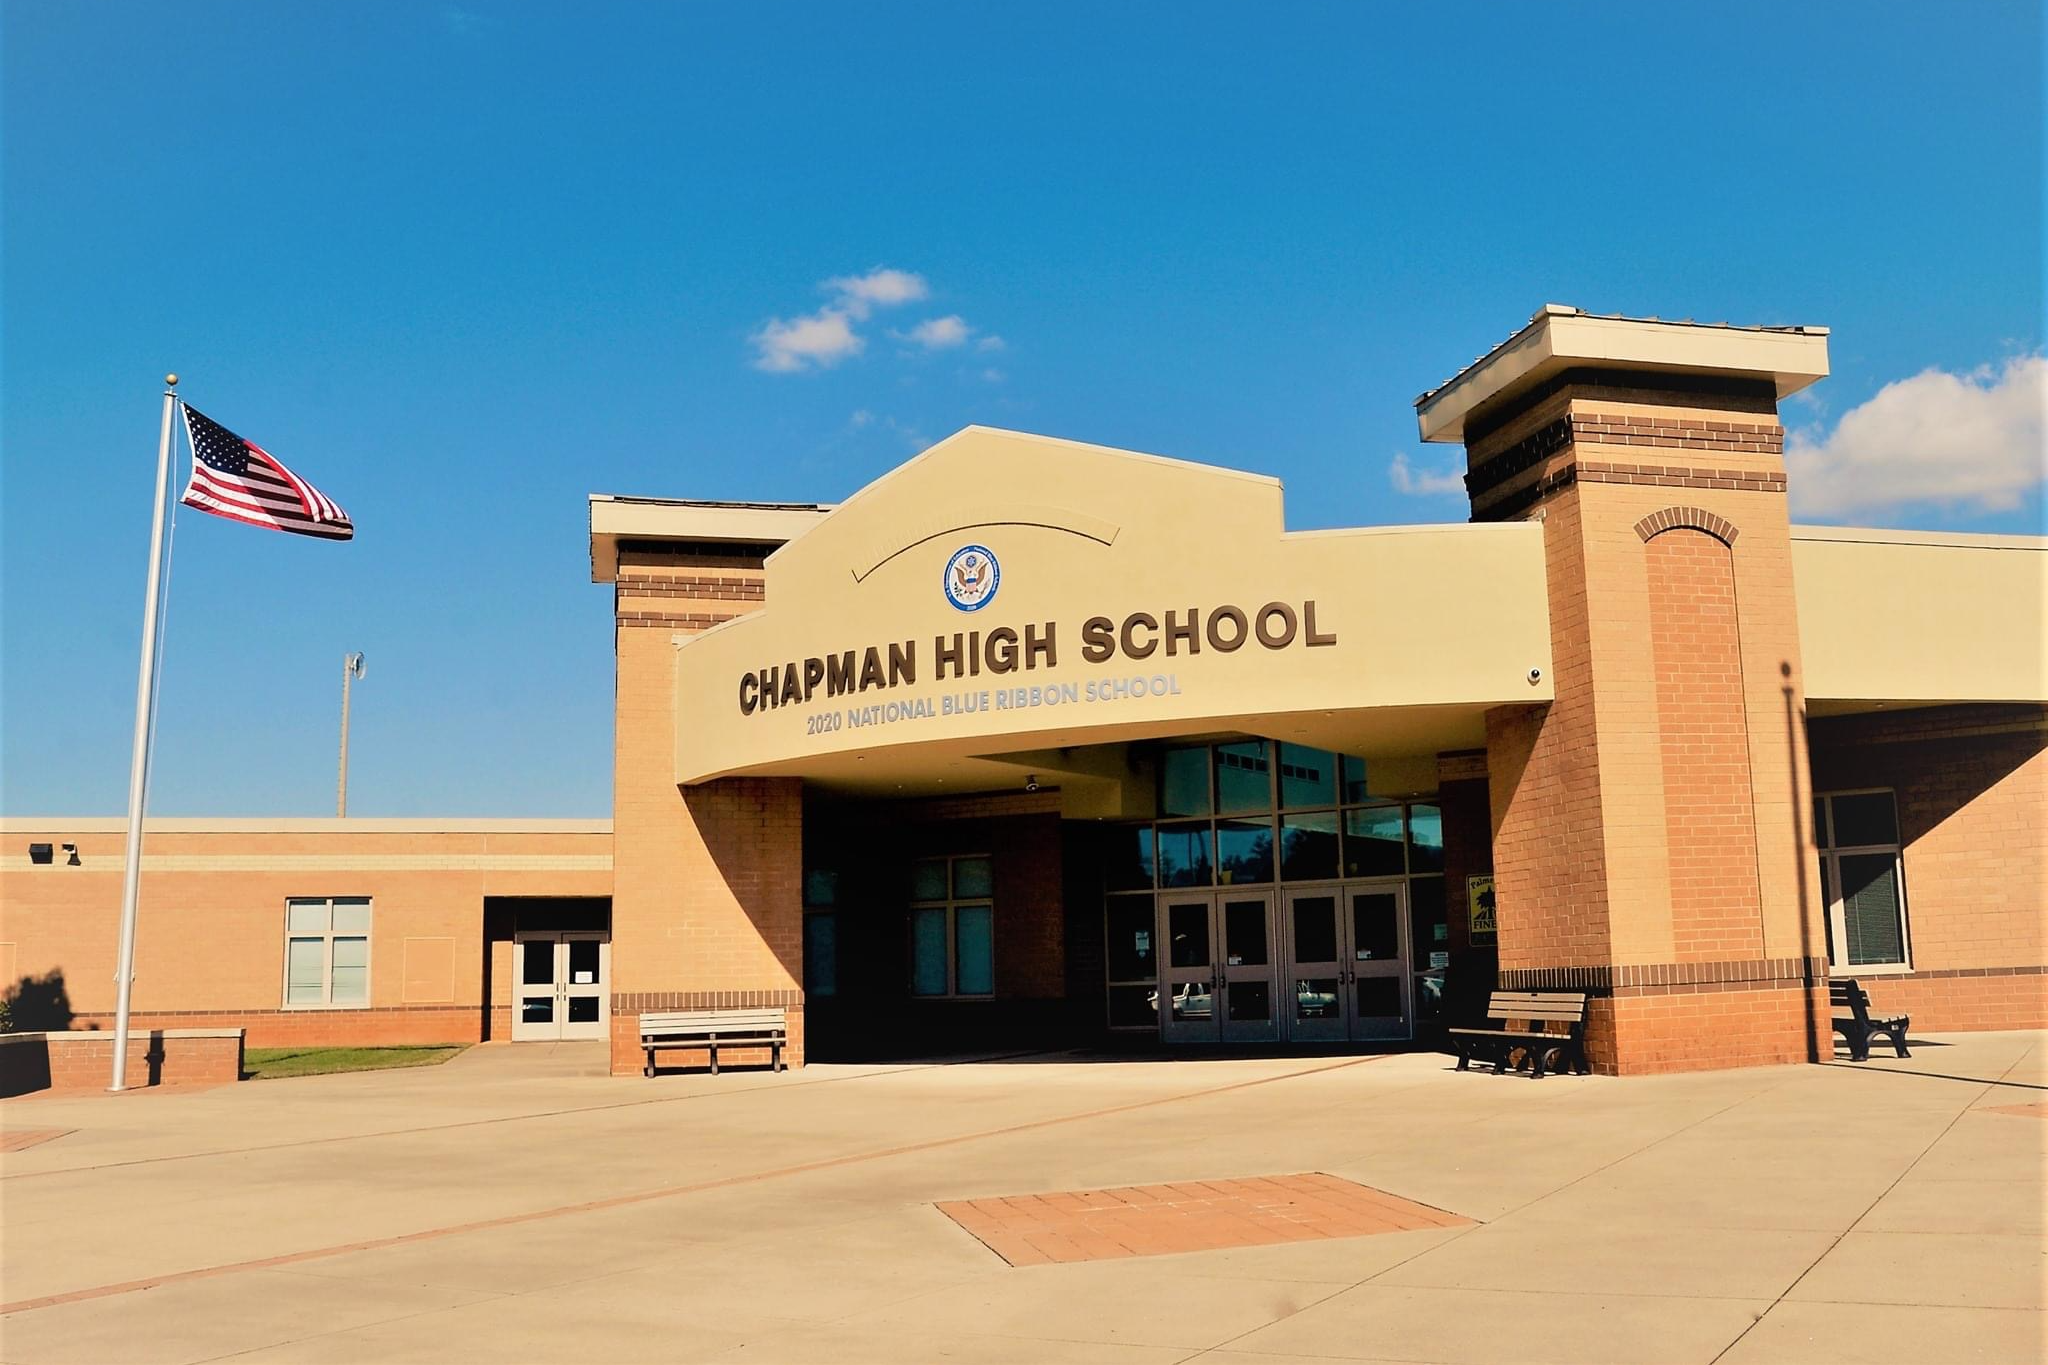 Chapman High School